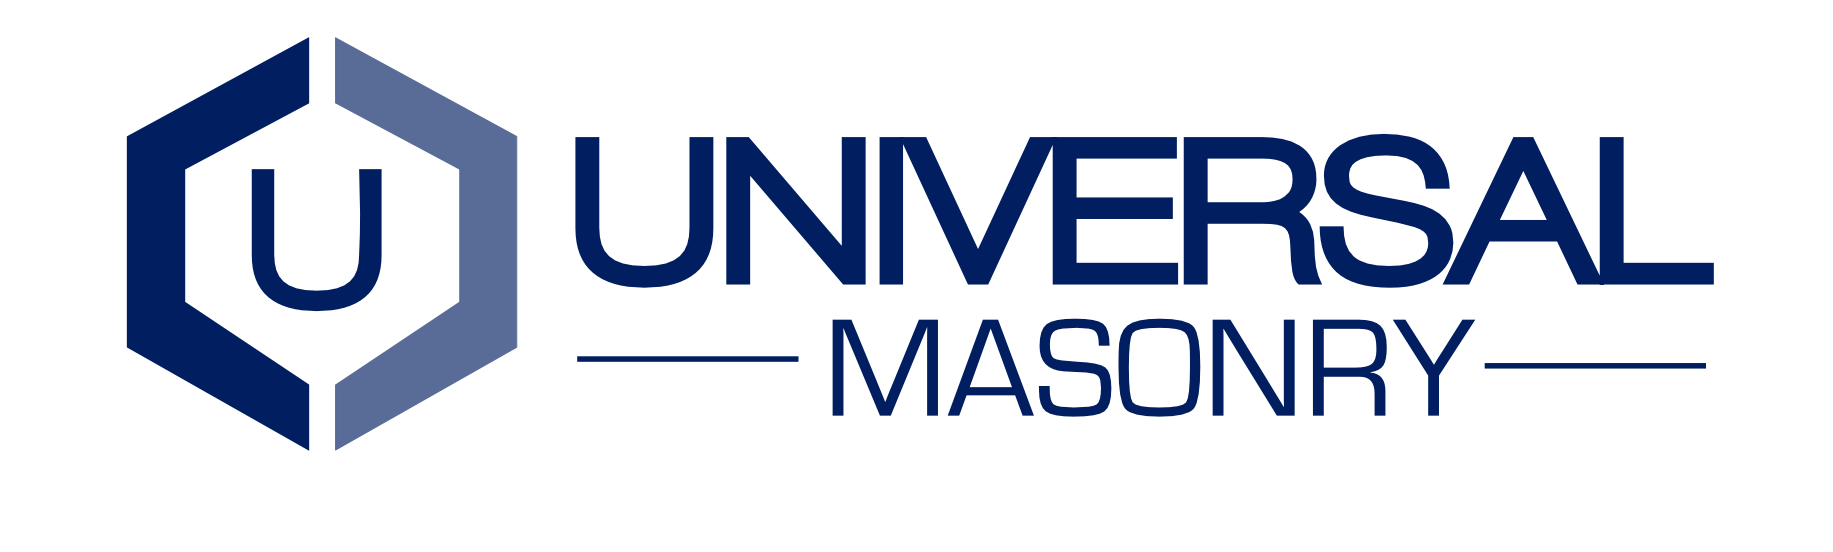 Universal Masonry